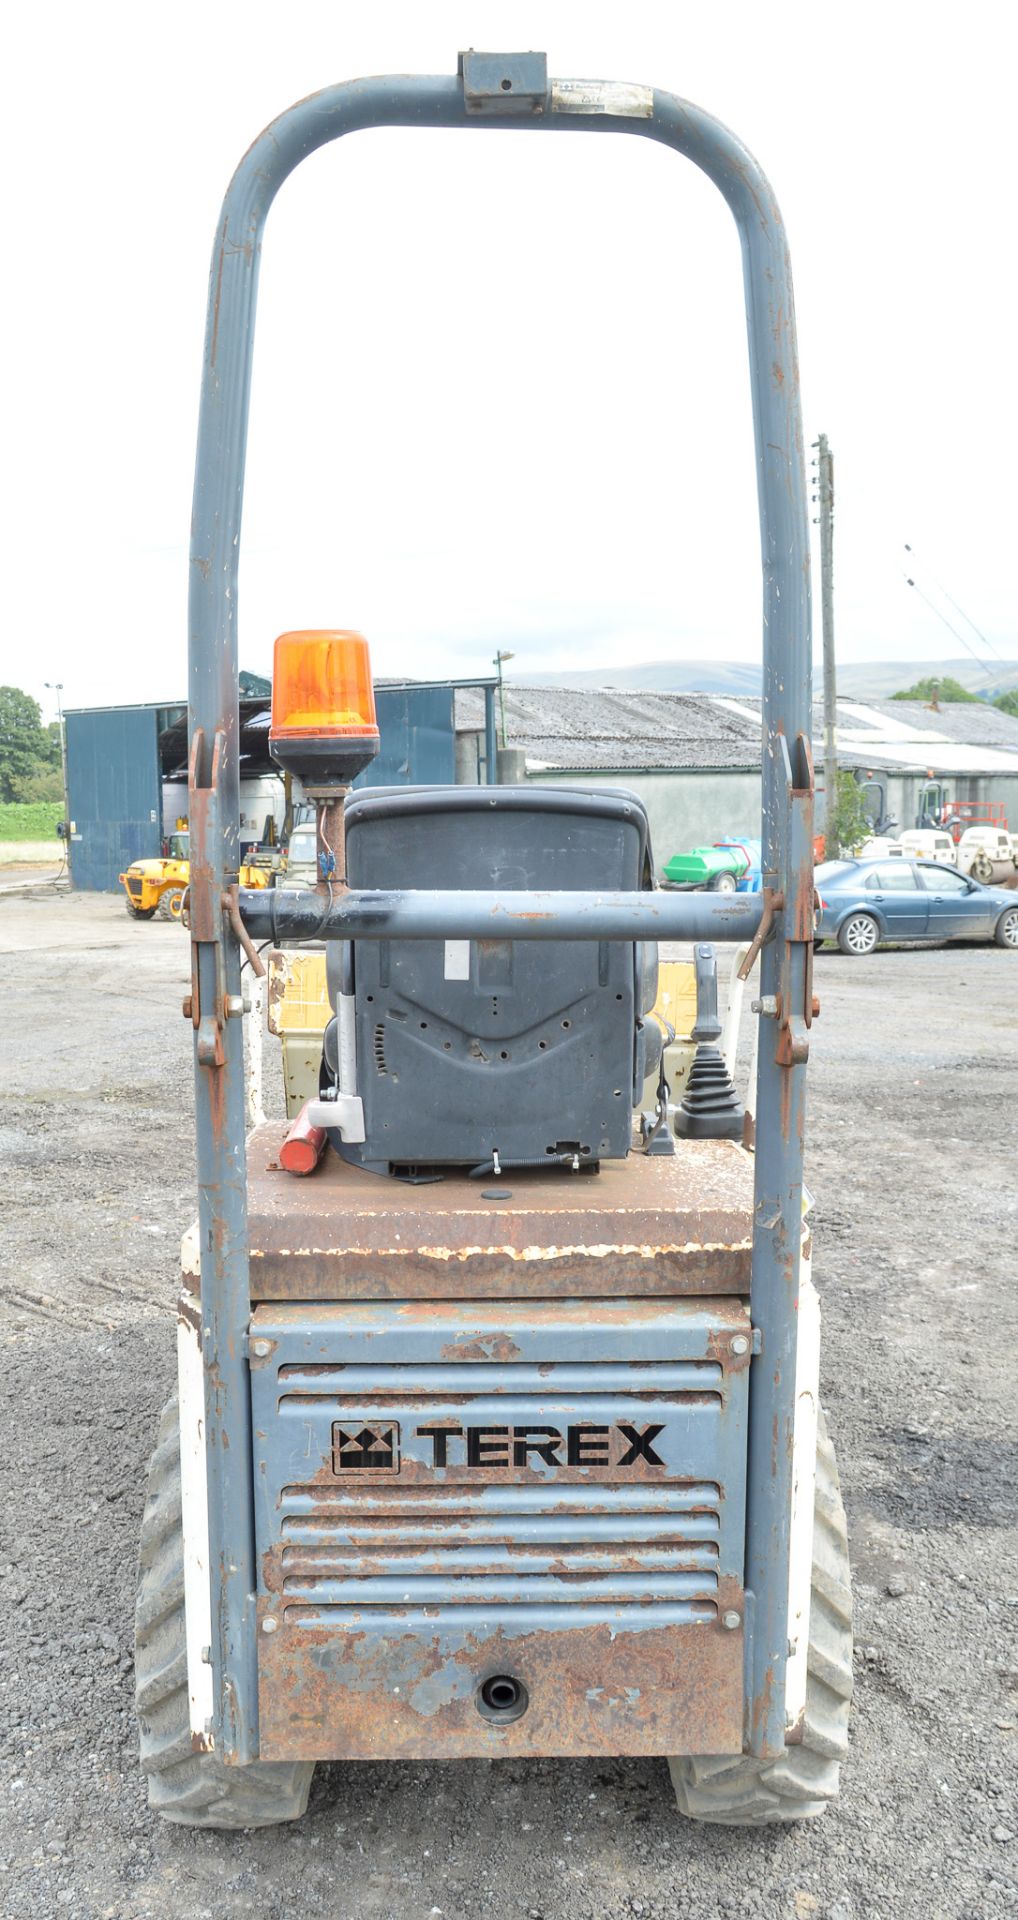 Benford Terex HD1000 1 tonne hi-tip dumper Year: 2008 S/N: E801FT100 Recorded Hours: 1533 D1144 - Image 6 of 12